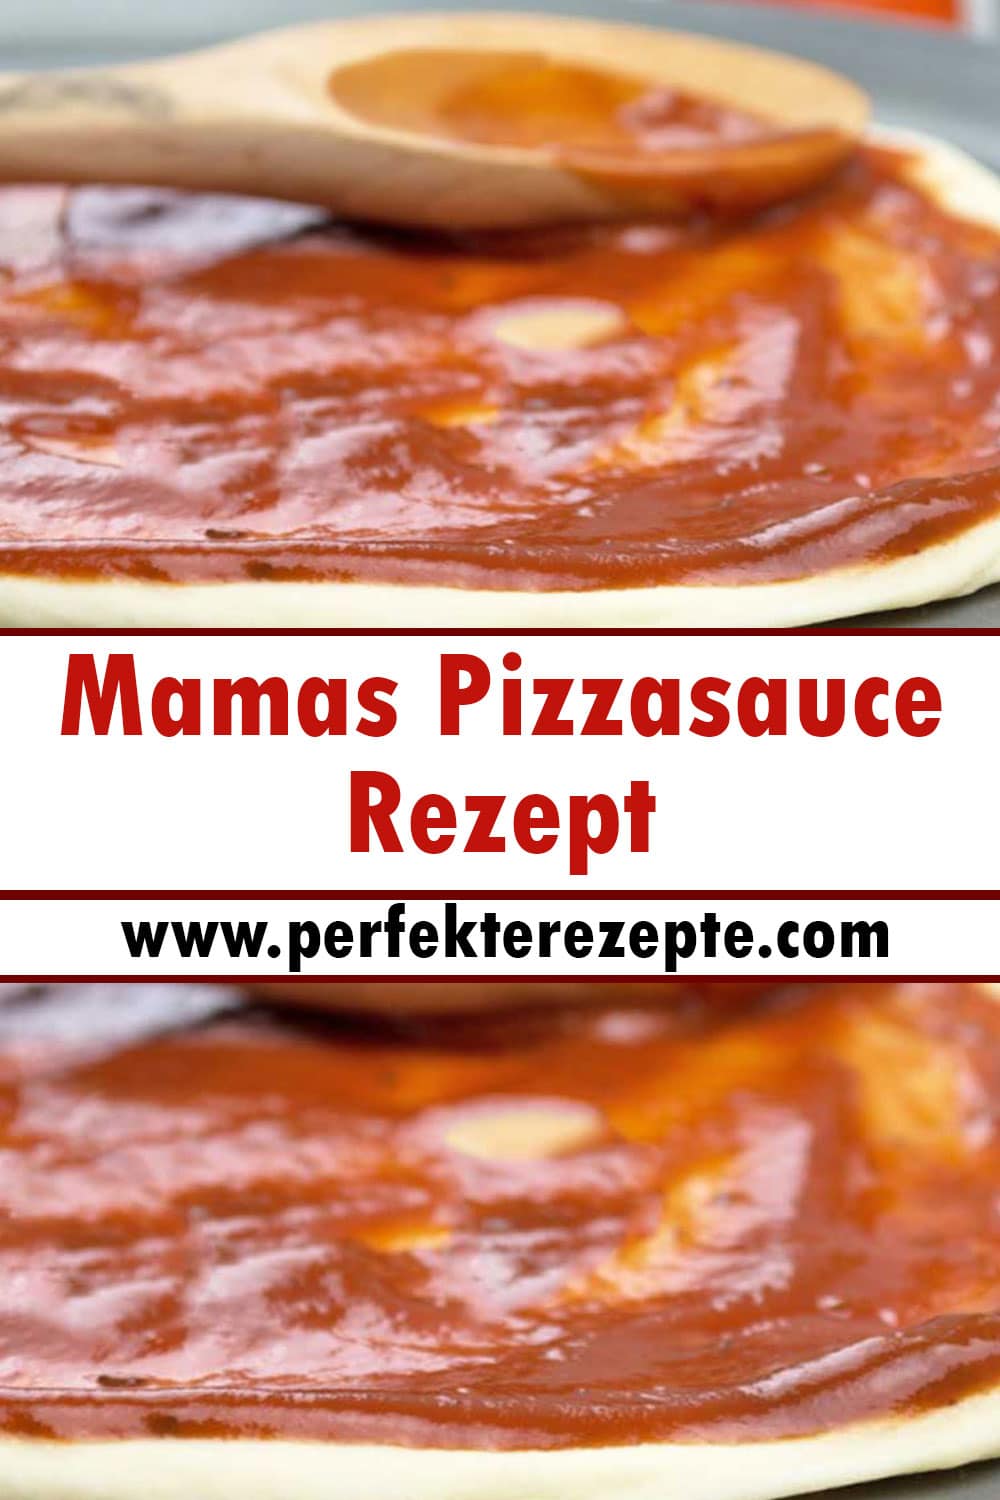 Mamas Pizzasauce Rezept